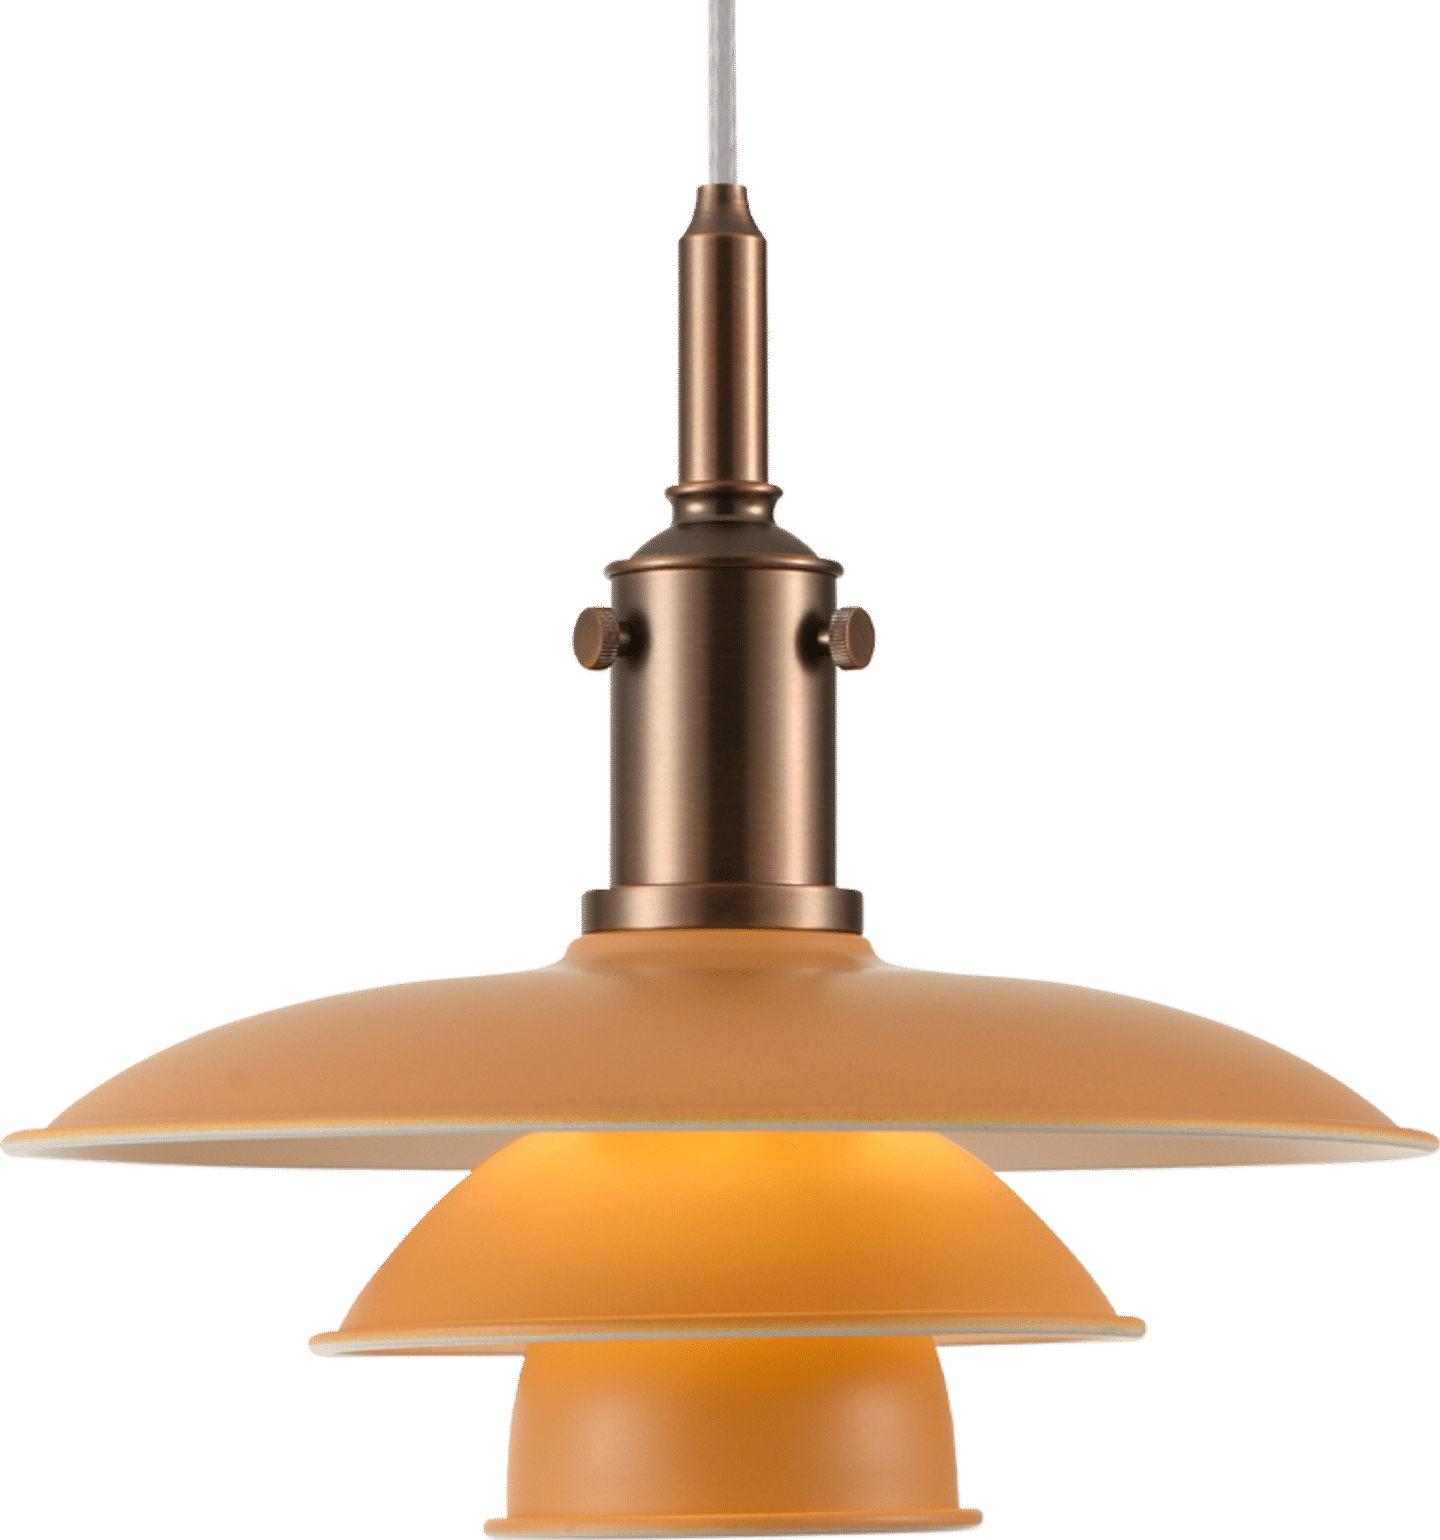 Lampe suspendue PH 3.5-3 Orange image.